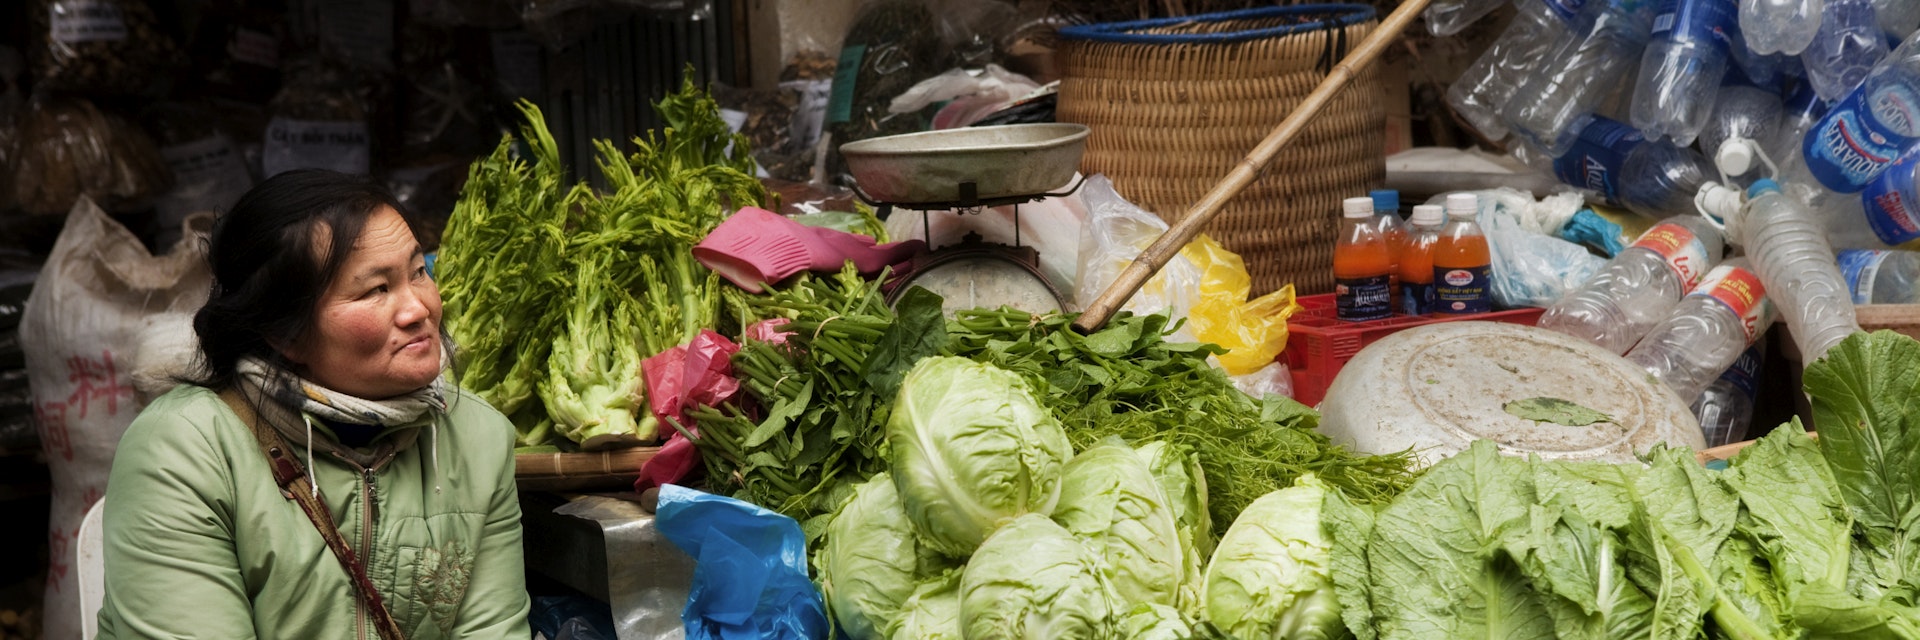 Woman selling green vegetables at Sapa market.